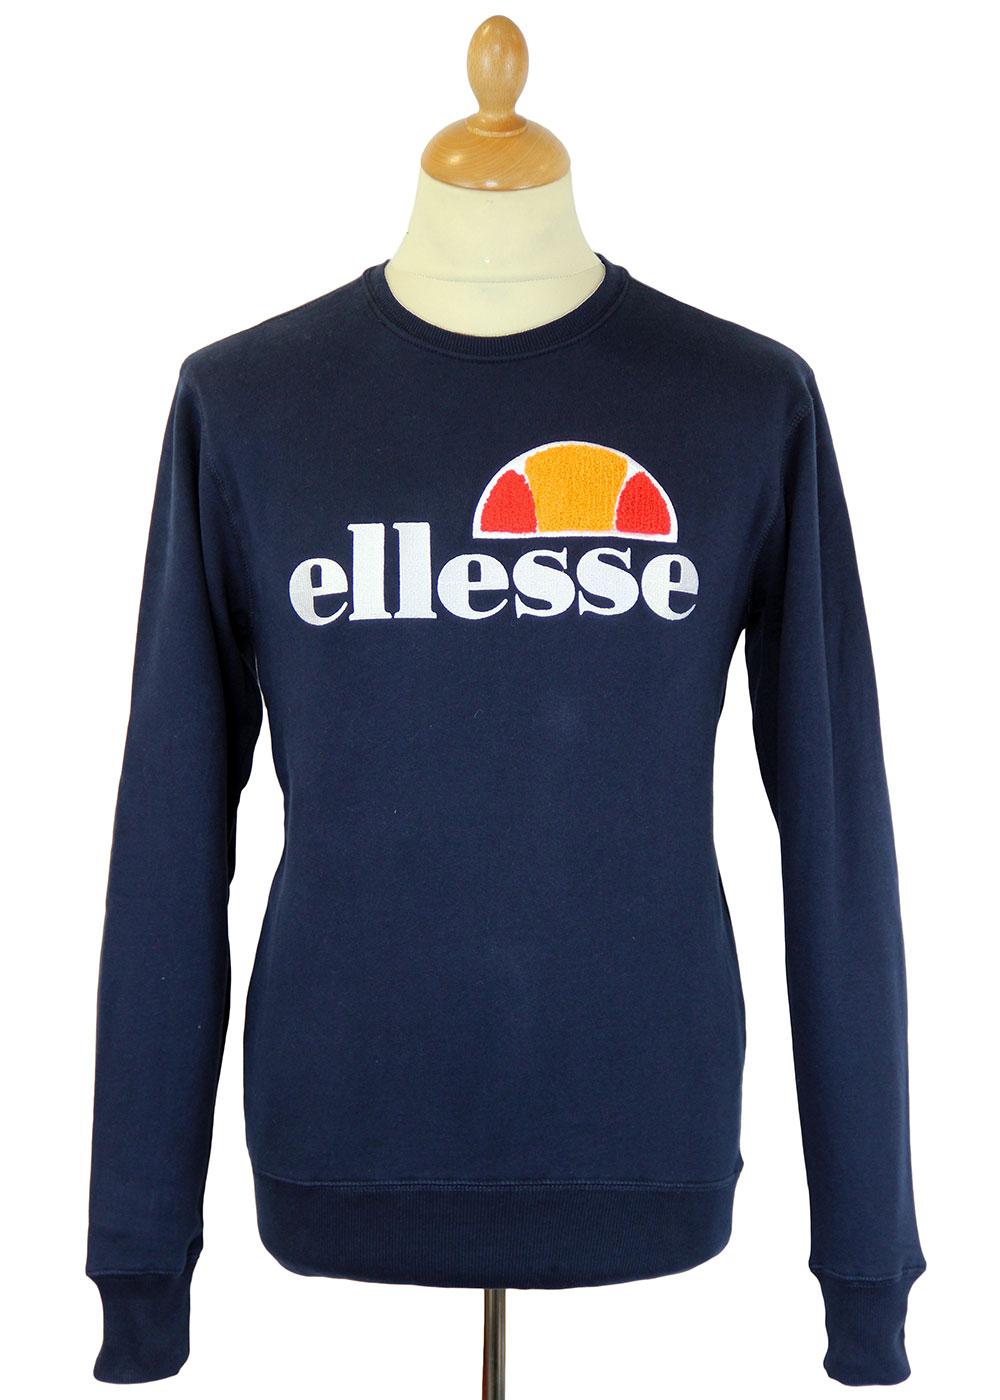 ELLESSE Guerazzi Retro 70s Indie Classic Crew Neck Sweater Blue